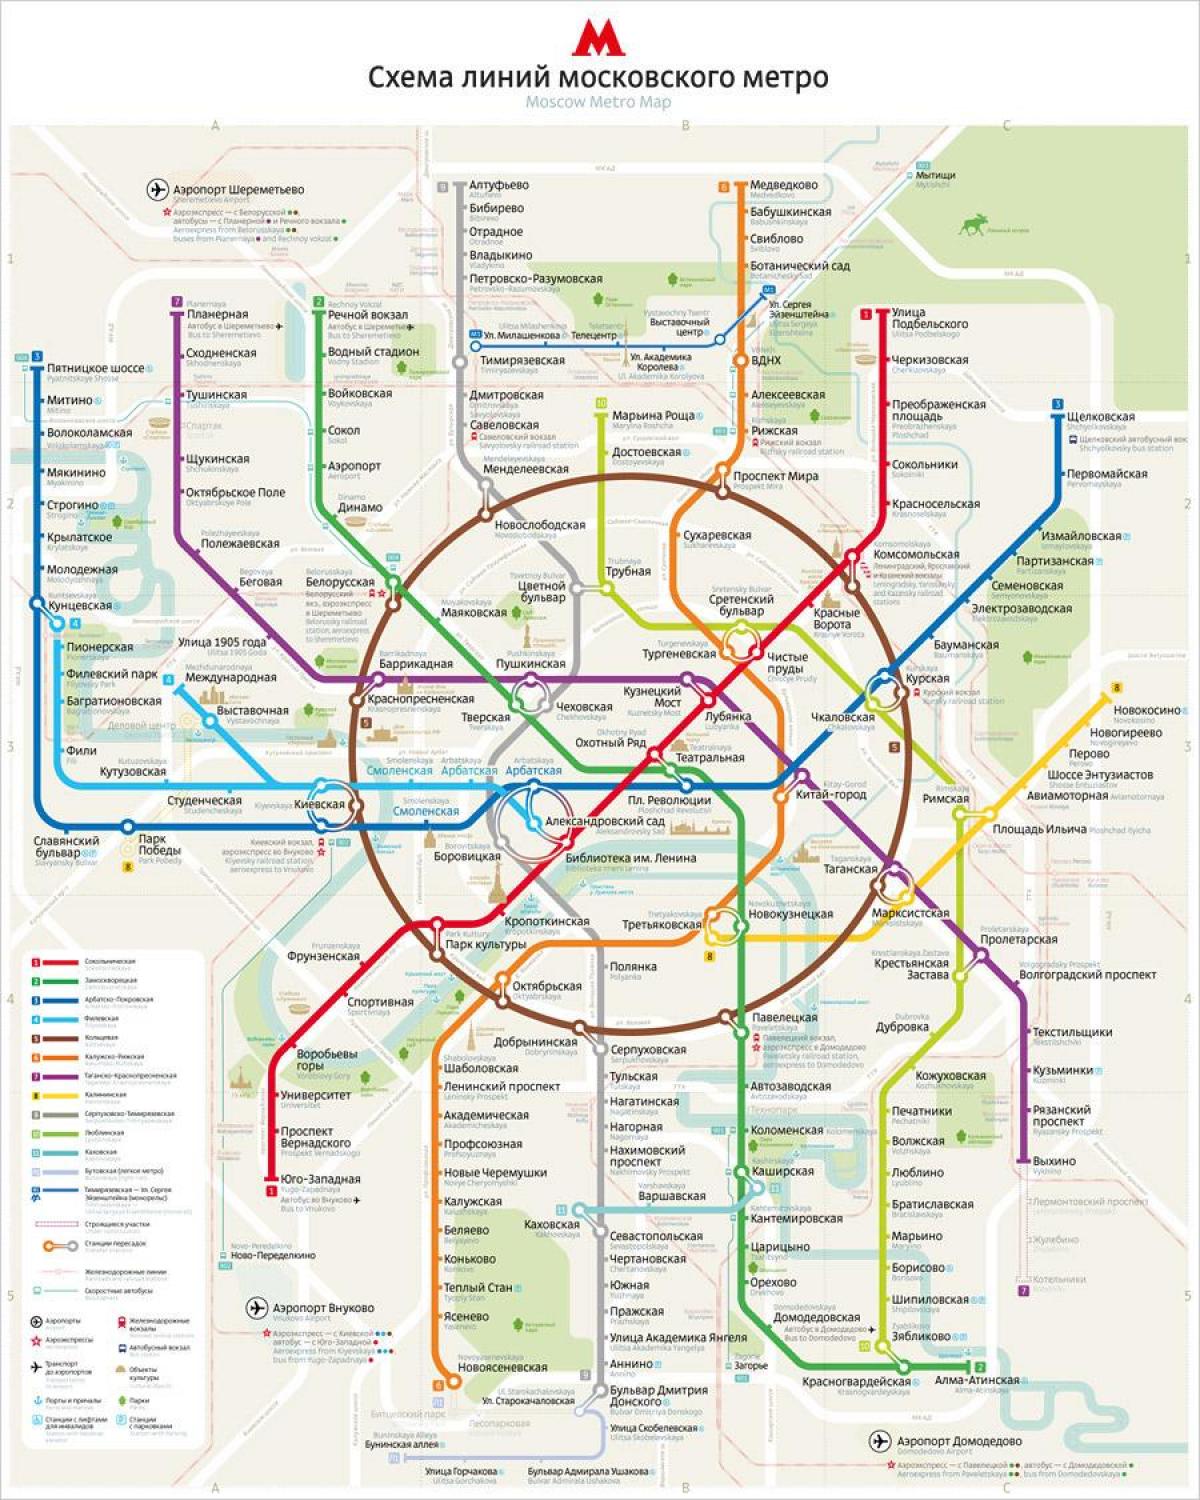 χάρτης του μετρό της Μόσχας αγγλικά και ρωσικά